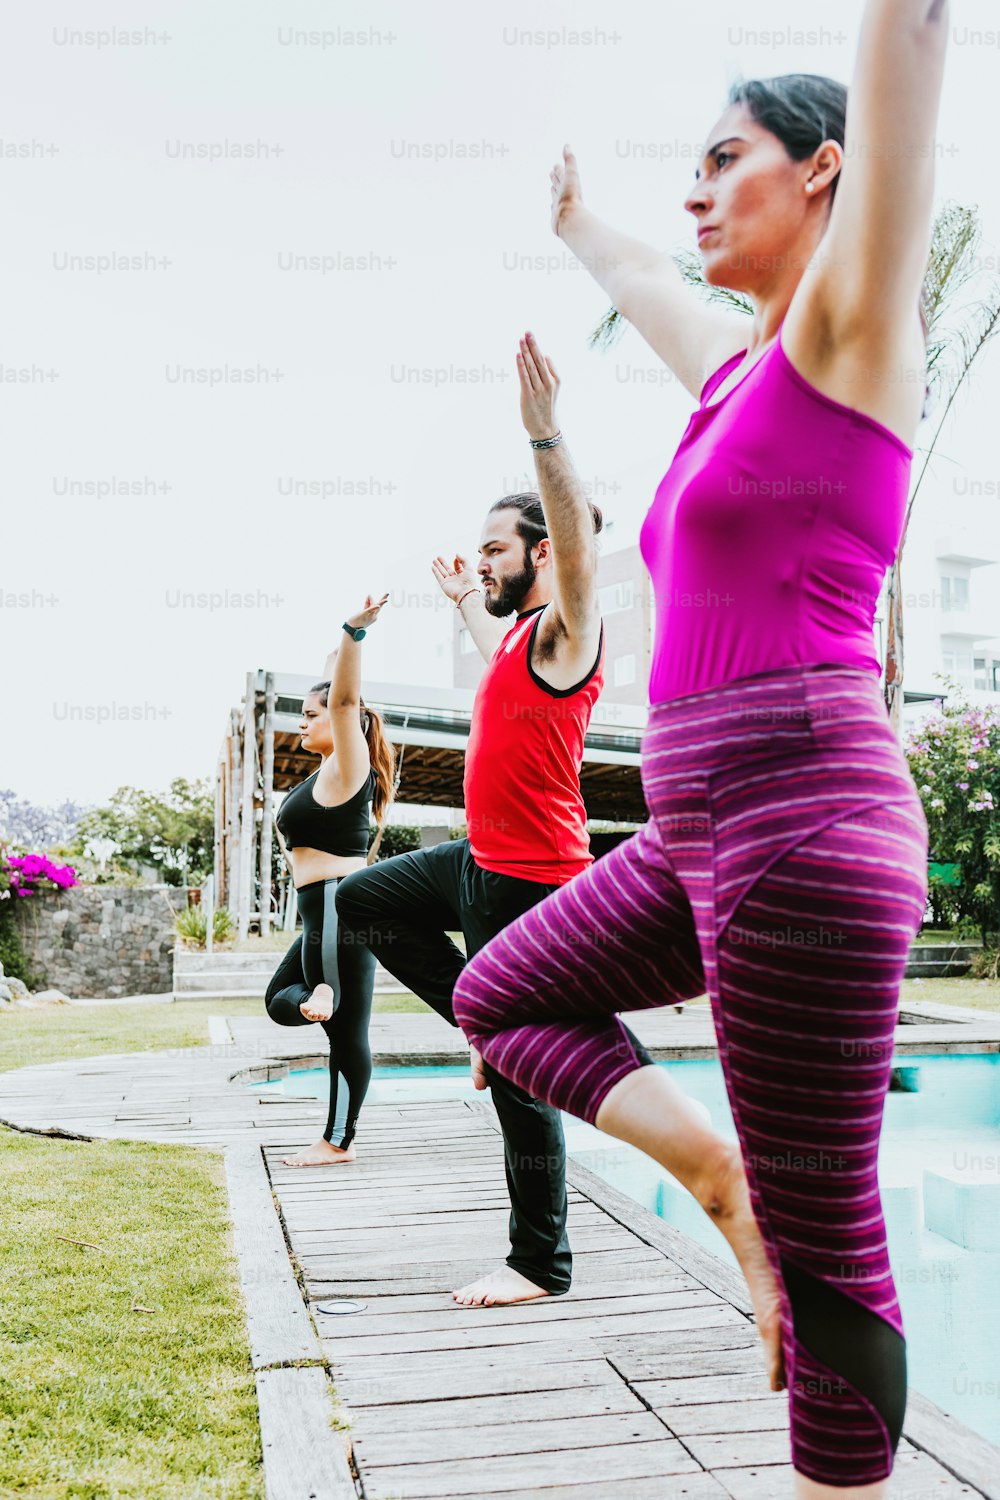 Groupe de personnes latines pratiquant des poses de yoga debout à l’extérieur en Amérique latine